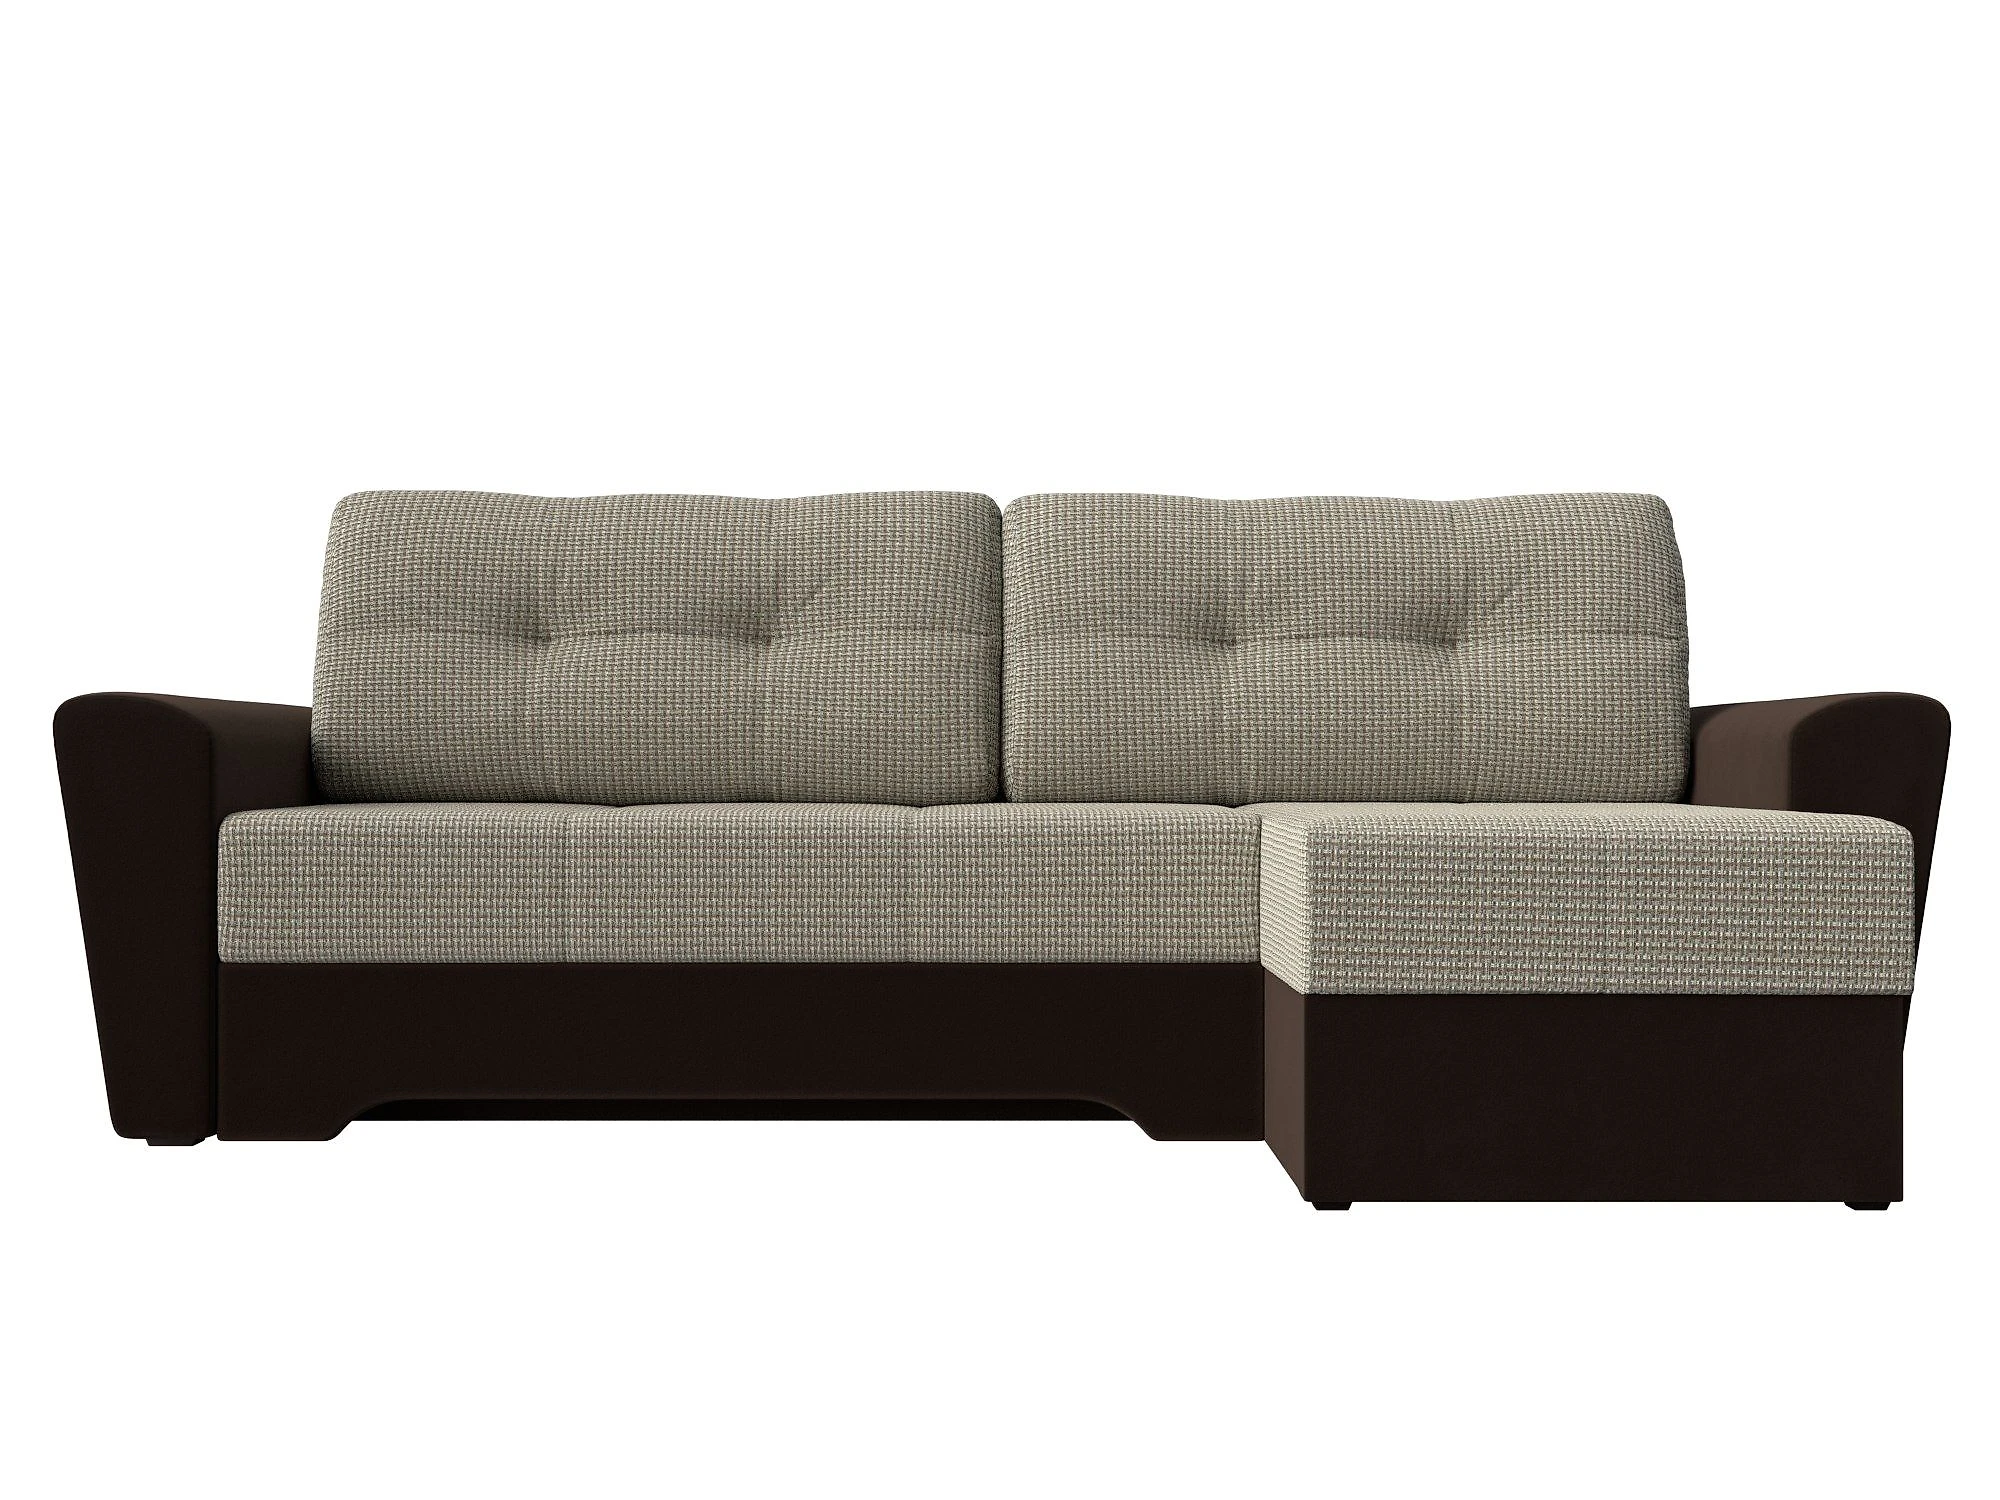  угловой диван из рогожки Амстердам Дизайн 41